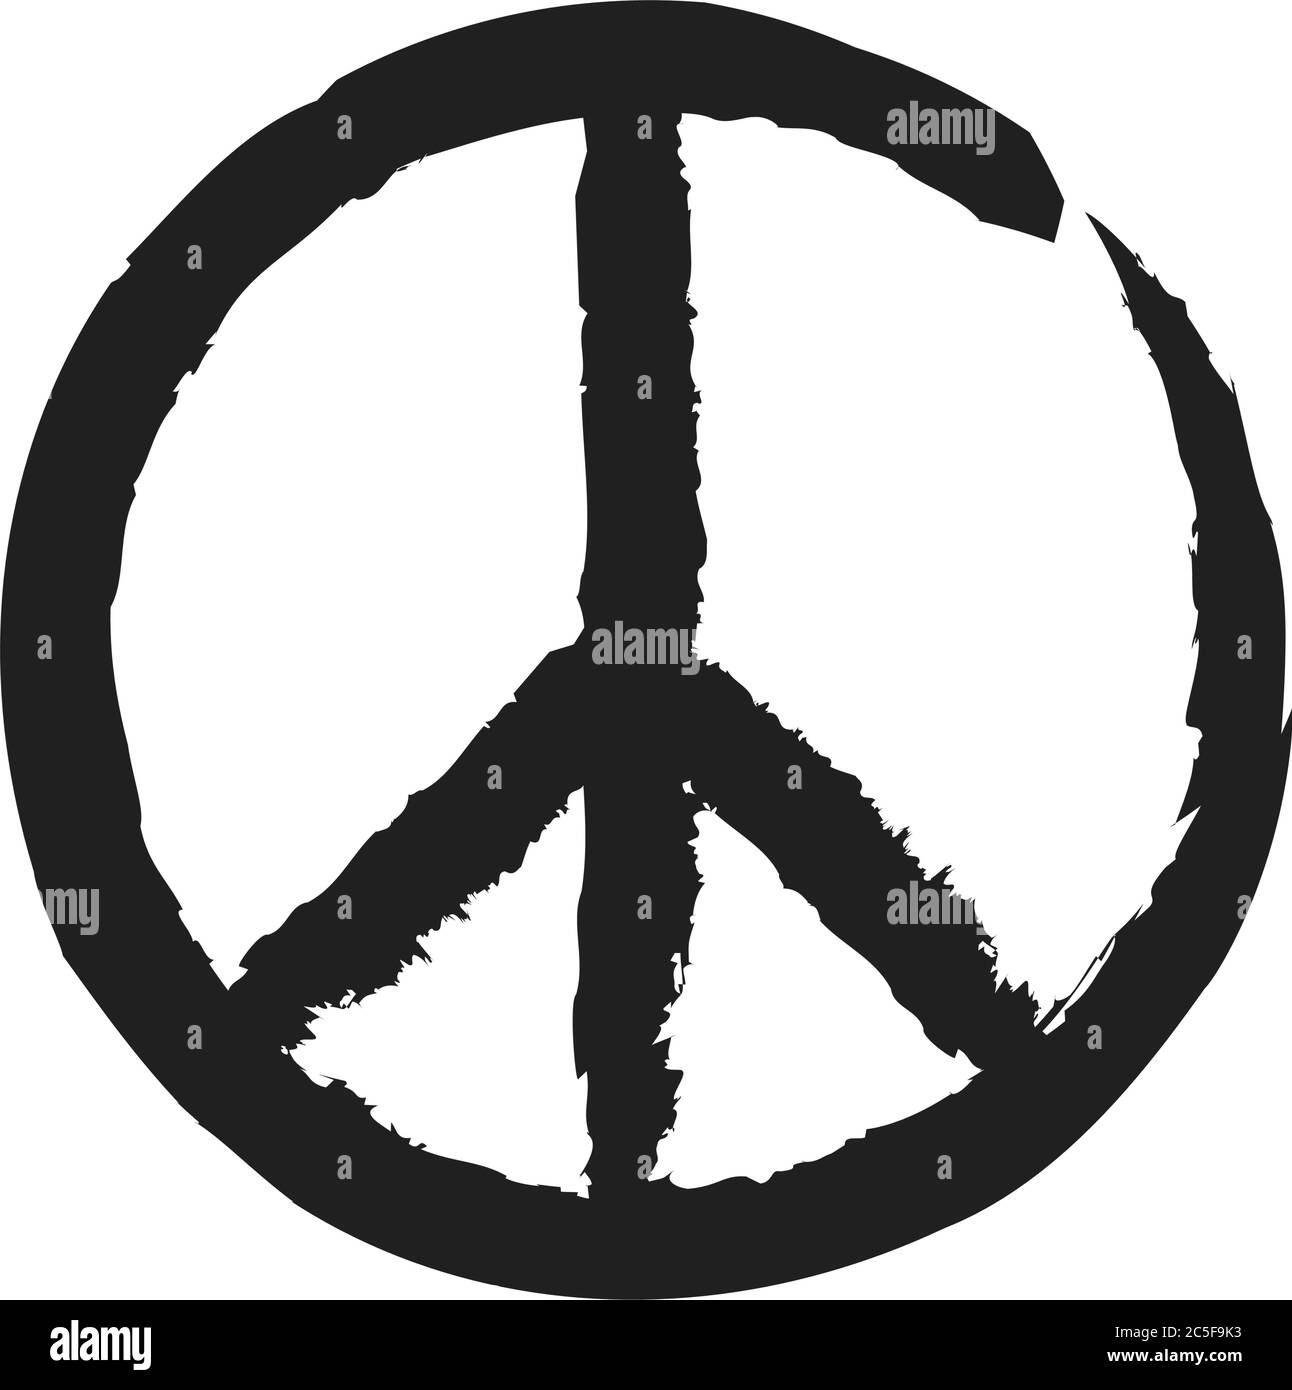 Pace e amore grunge sporco vettore simbolo di pace. Anti-guerra pacifismo icona hippie cultura segno illustrazione. Illustrazione Vettoriale